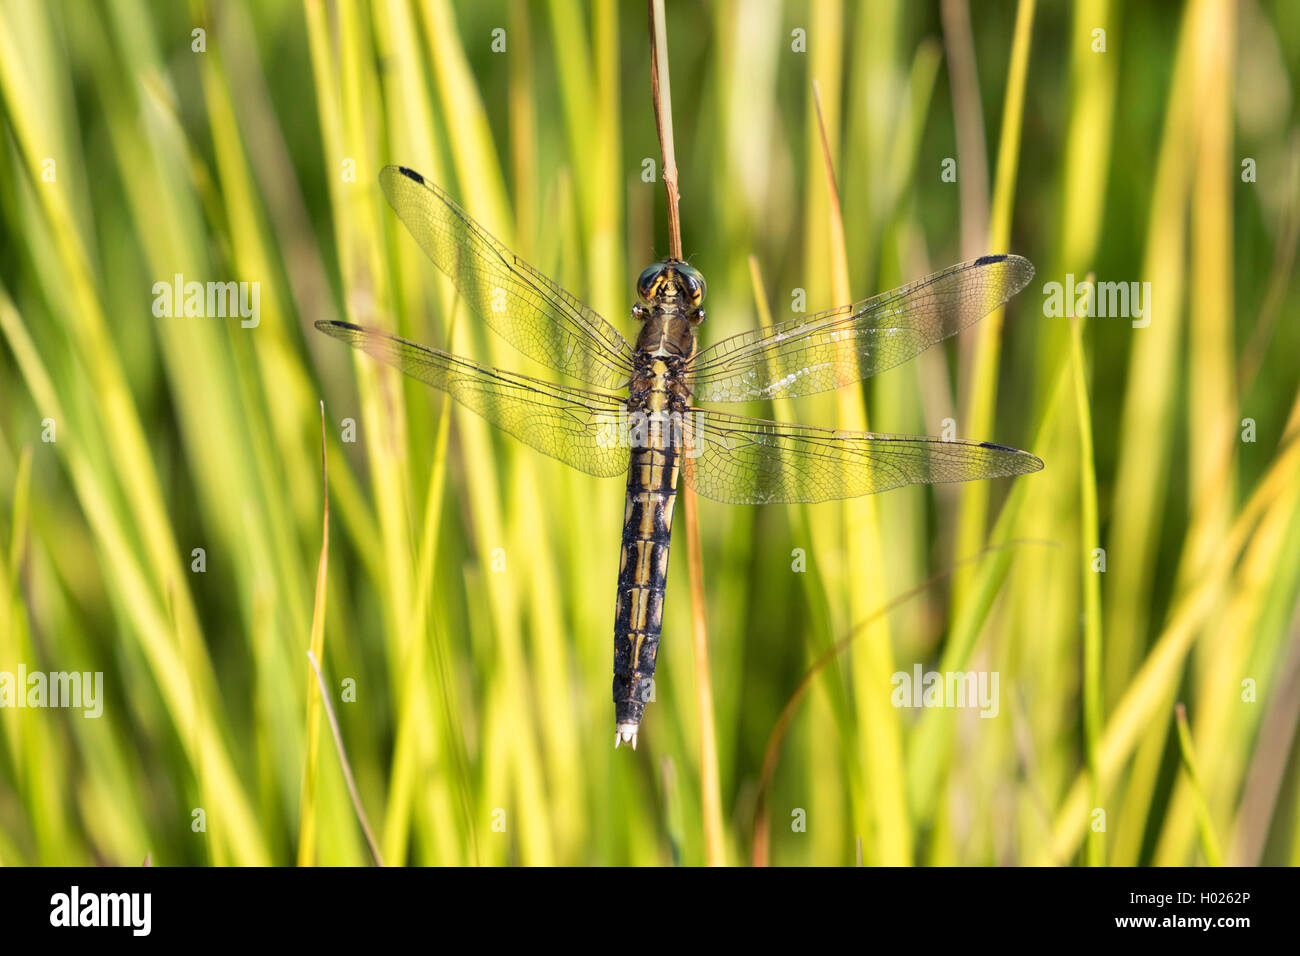 Zwei - Dragonfly gesichtet (Epitheca bimaculata, Libellula bimaculata), auf Gras Blade, Deutschland, Bayern Stockfoto